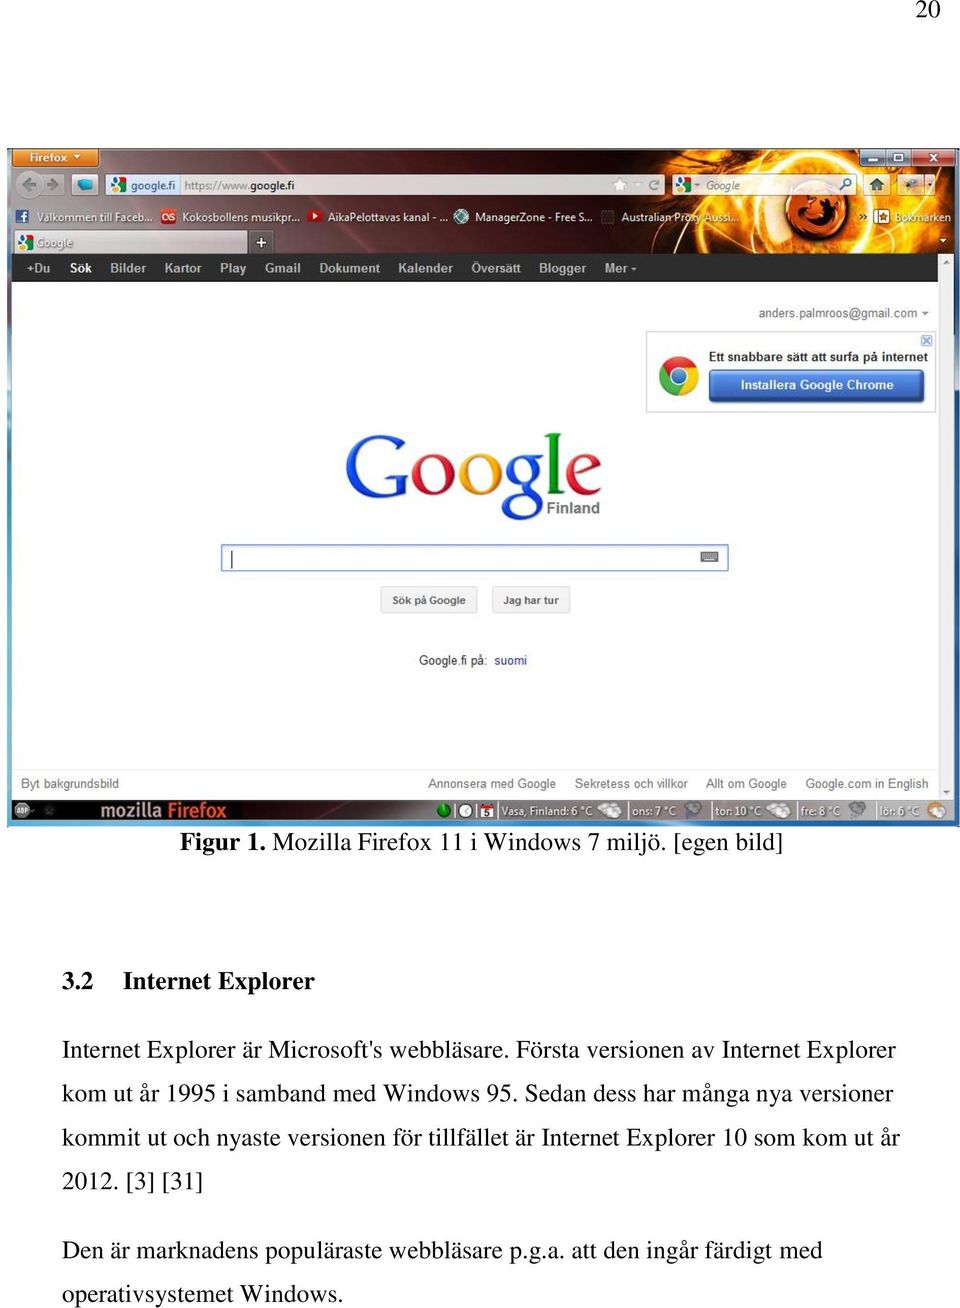 Första versionen av Internet Explorer kom ut år 1995 i samband med Windows 95.